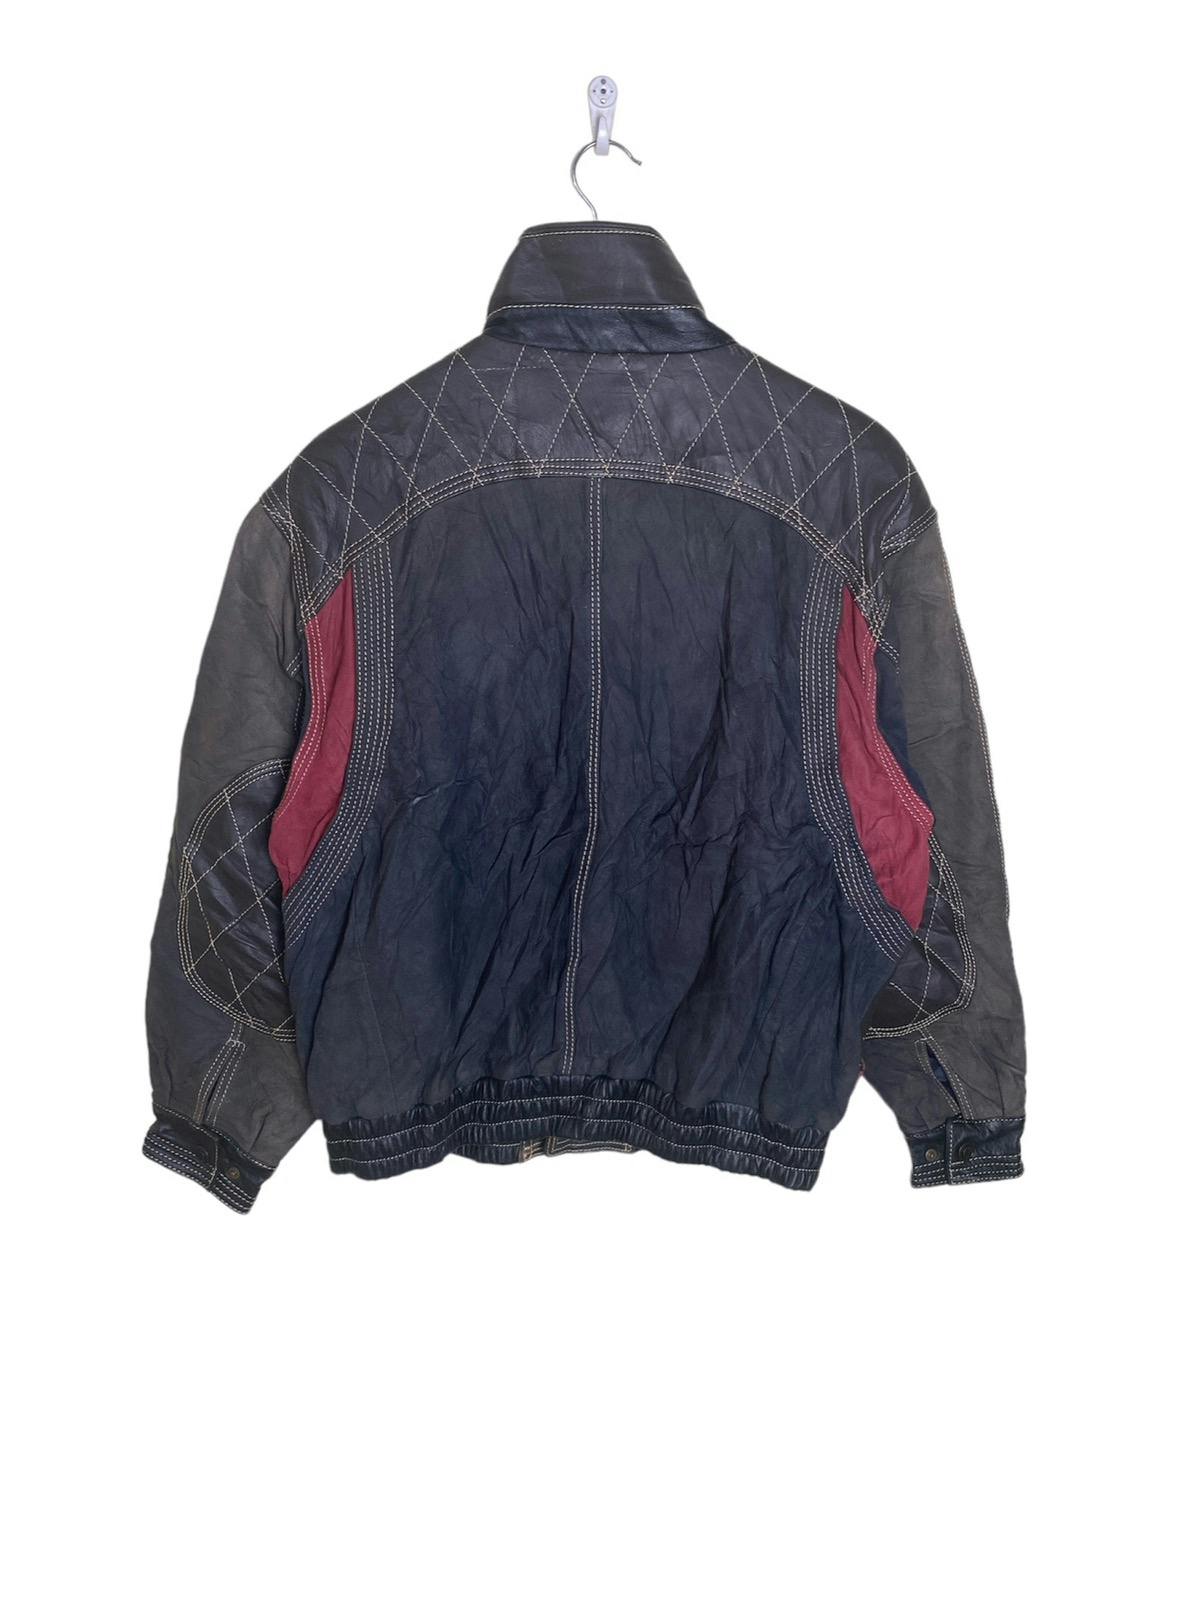 Pierre Balmain Paris Leather Jacket - 9